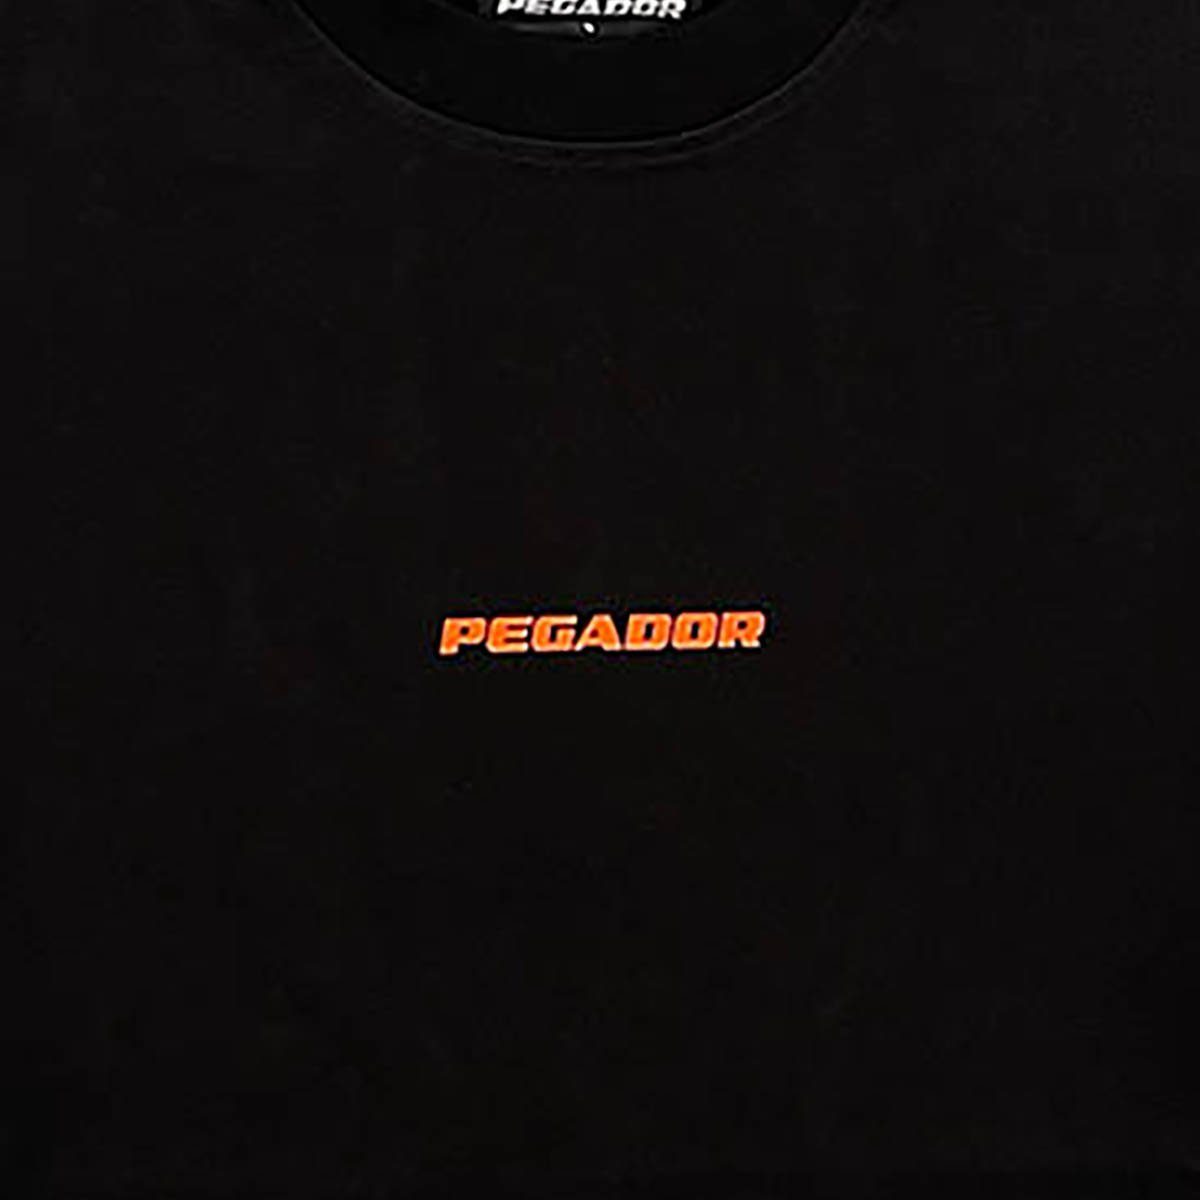 Logo Colne Pegador T-Shirt